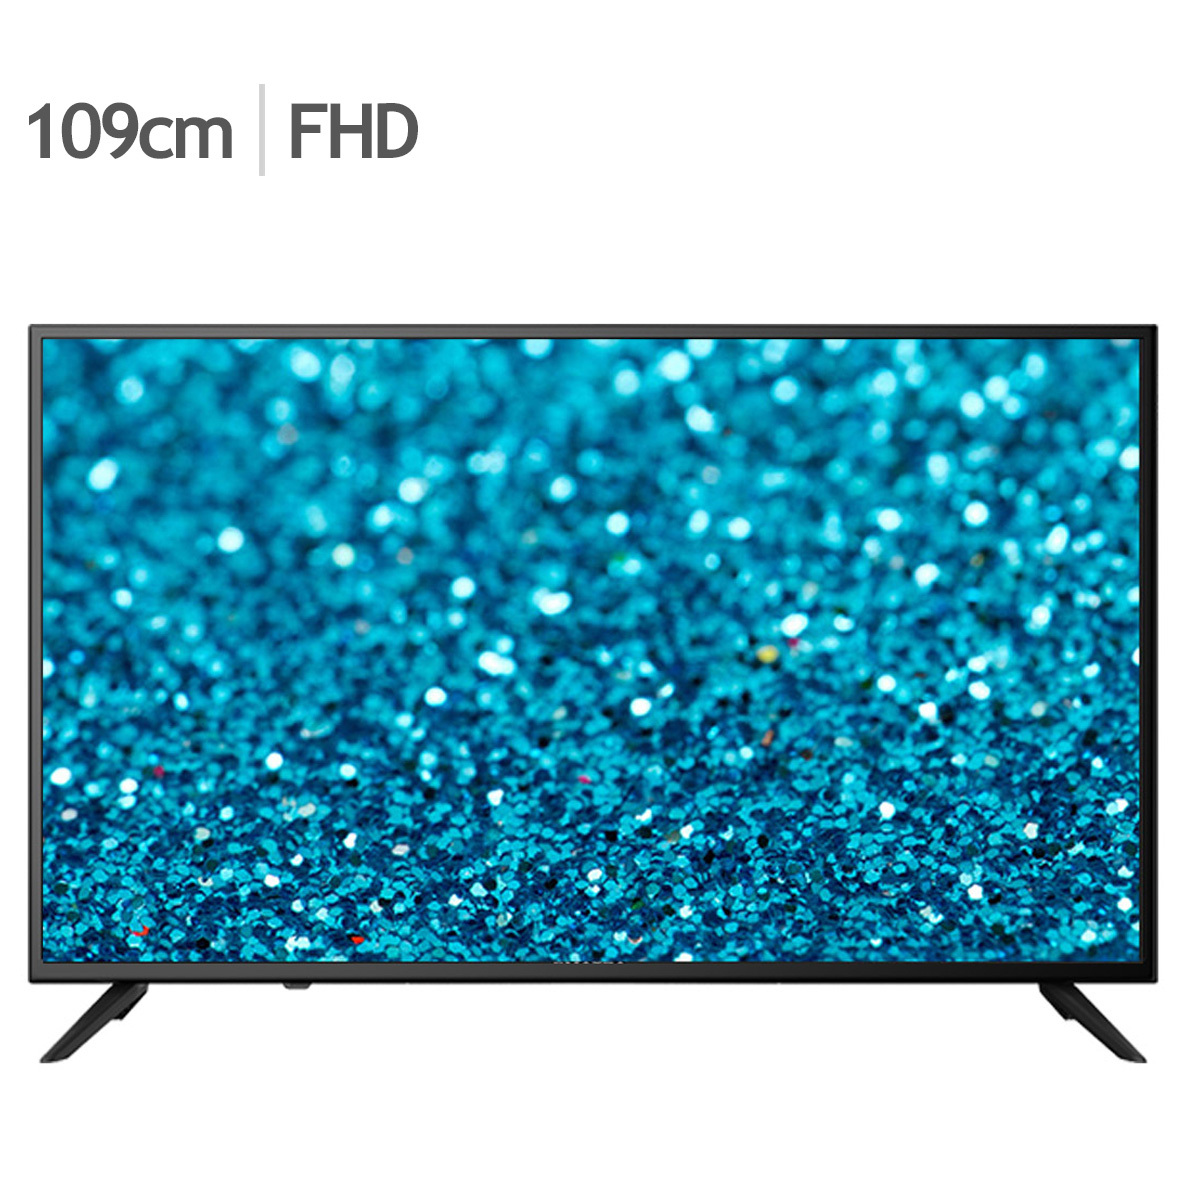 유맥스 FHD TV MX43F 109cm (43)